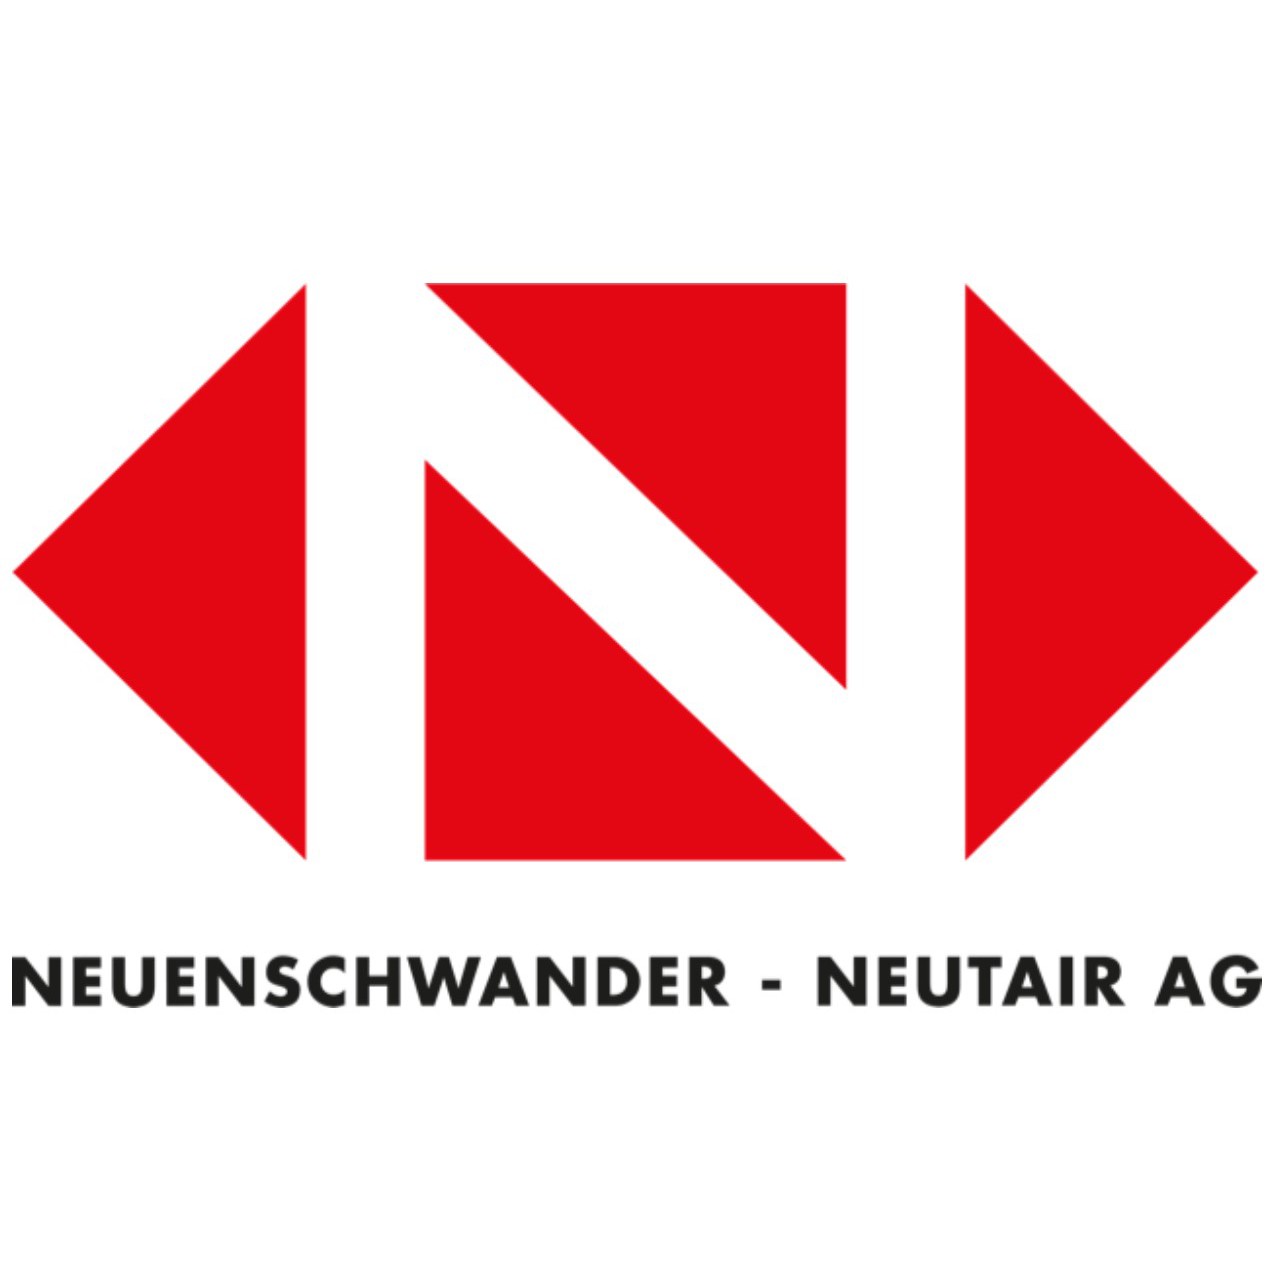 Neuenschwander - Neutair AG Logo